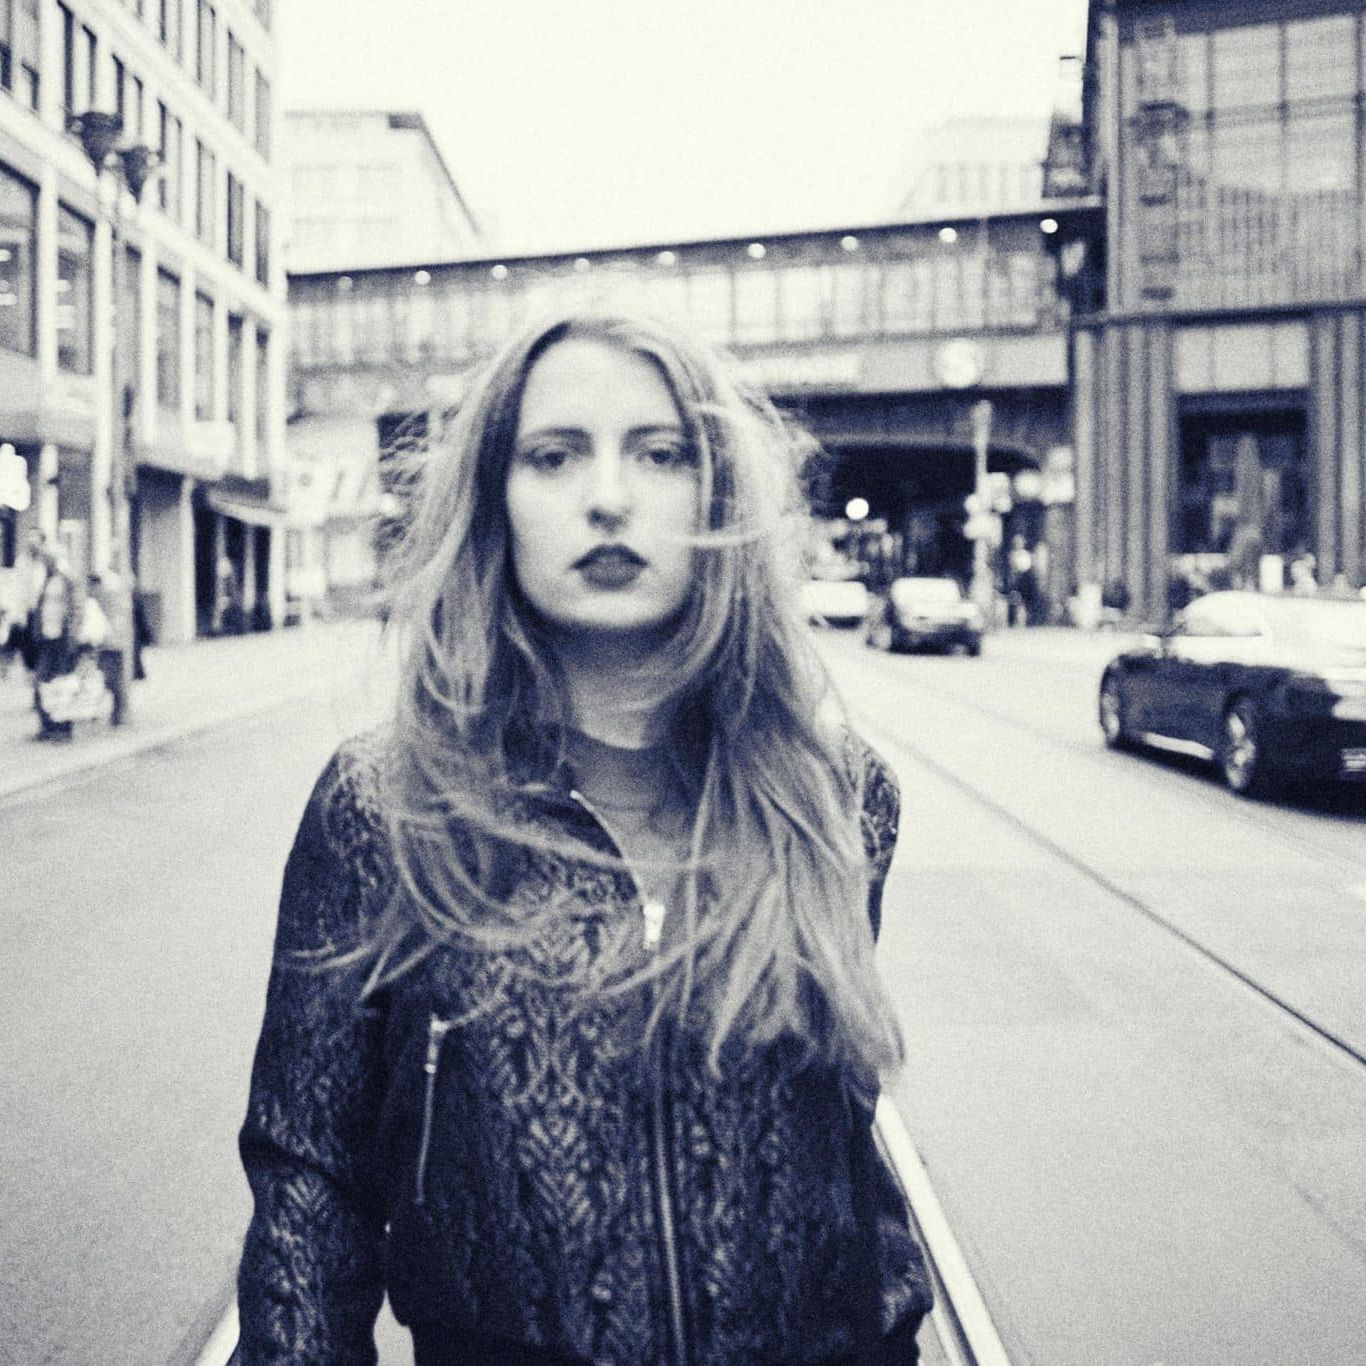 Sängerin Taja aufgenommen auf einer Strasse in Berlin. Schwarzweiß-Aufnahme mit ordentlich unscharfe und Sex